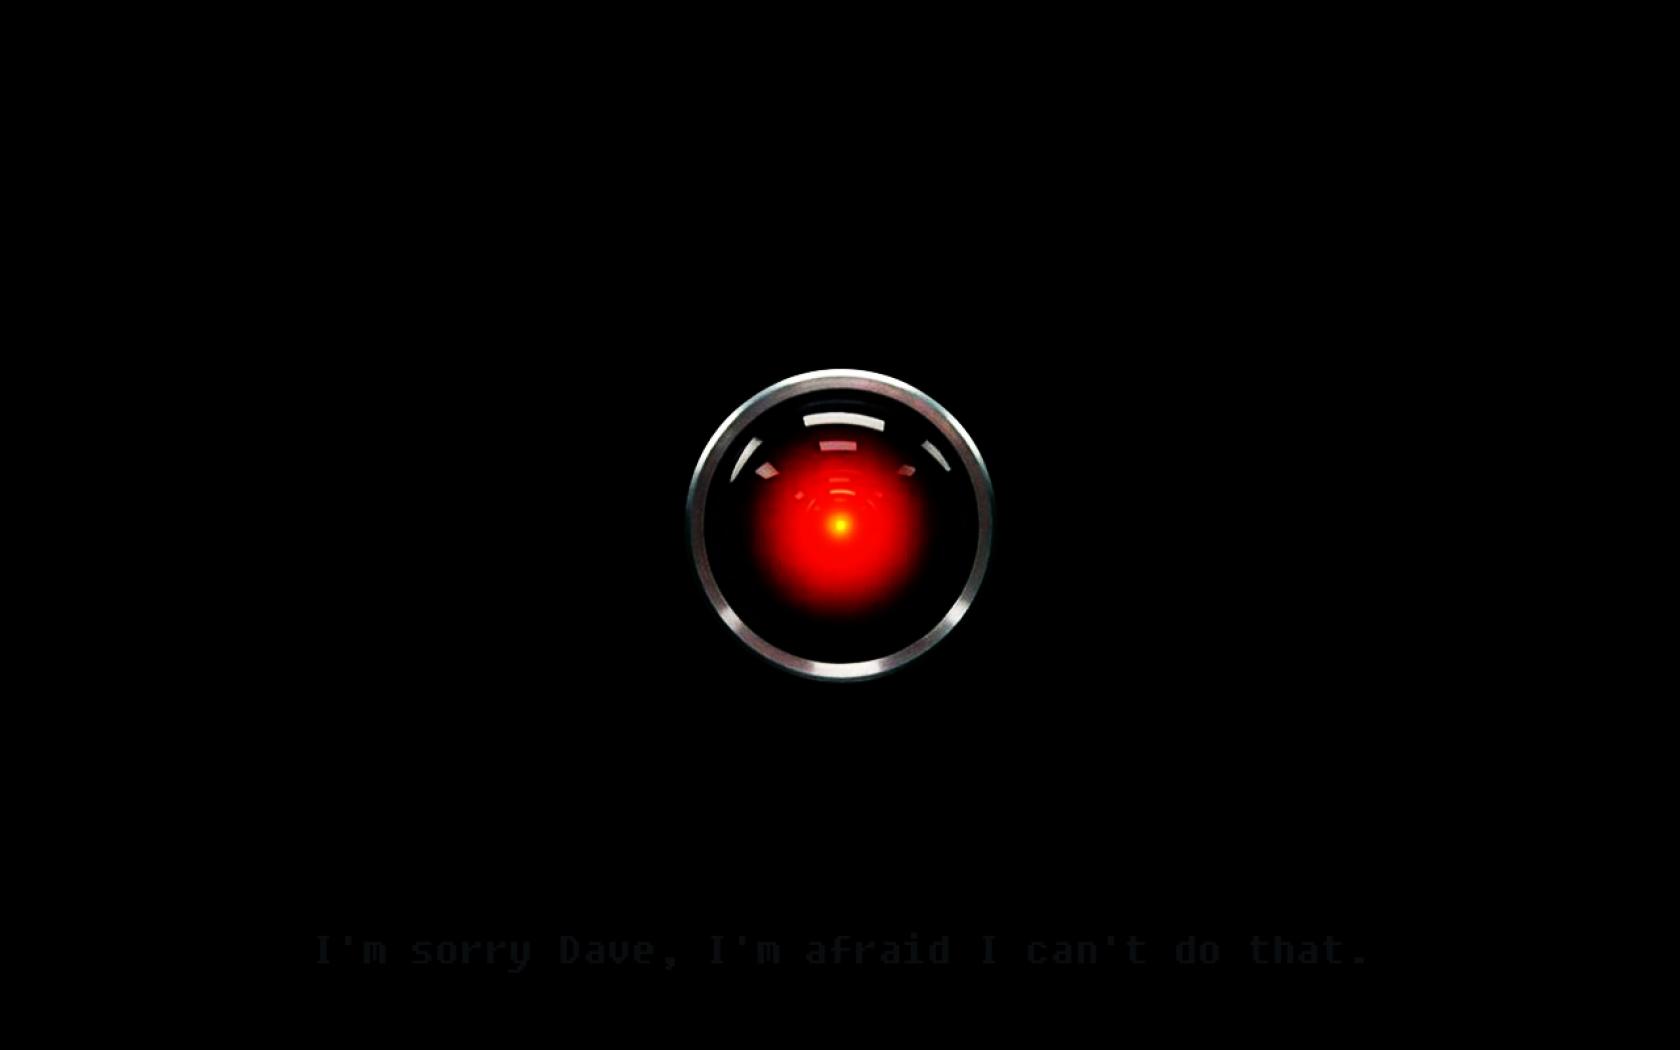 "Ce n'est pas de l'IA dont il faut avoir peur, mais de l'humain. C'est aussi de l'humain dont il faut tout espérer."